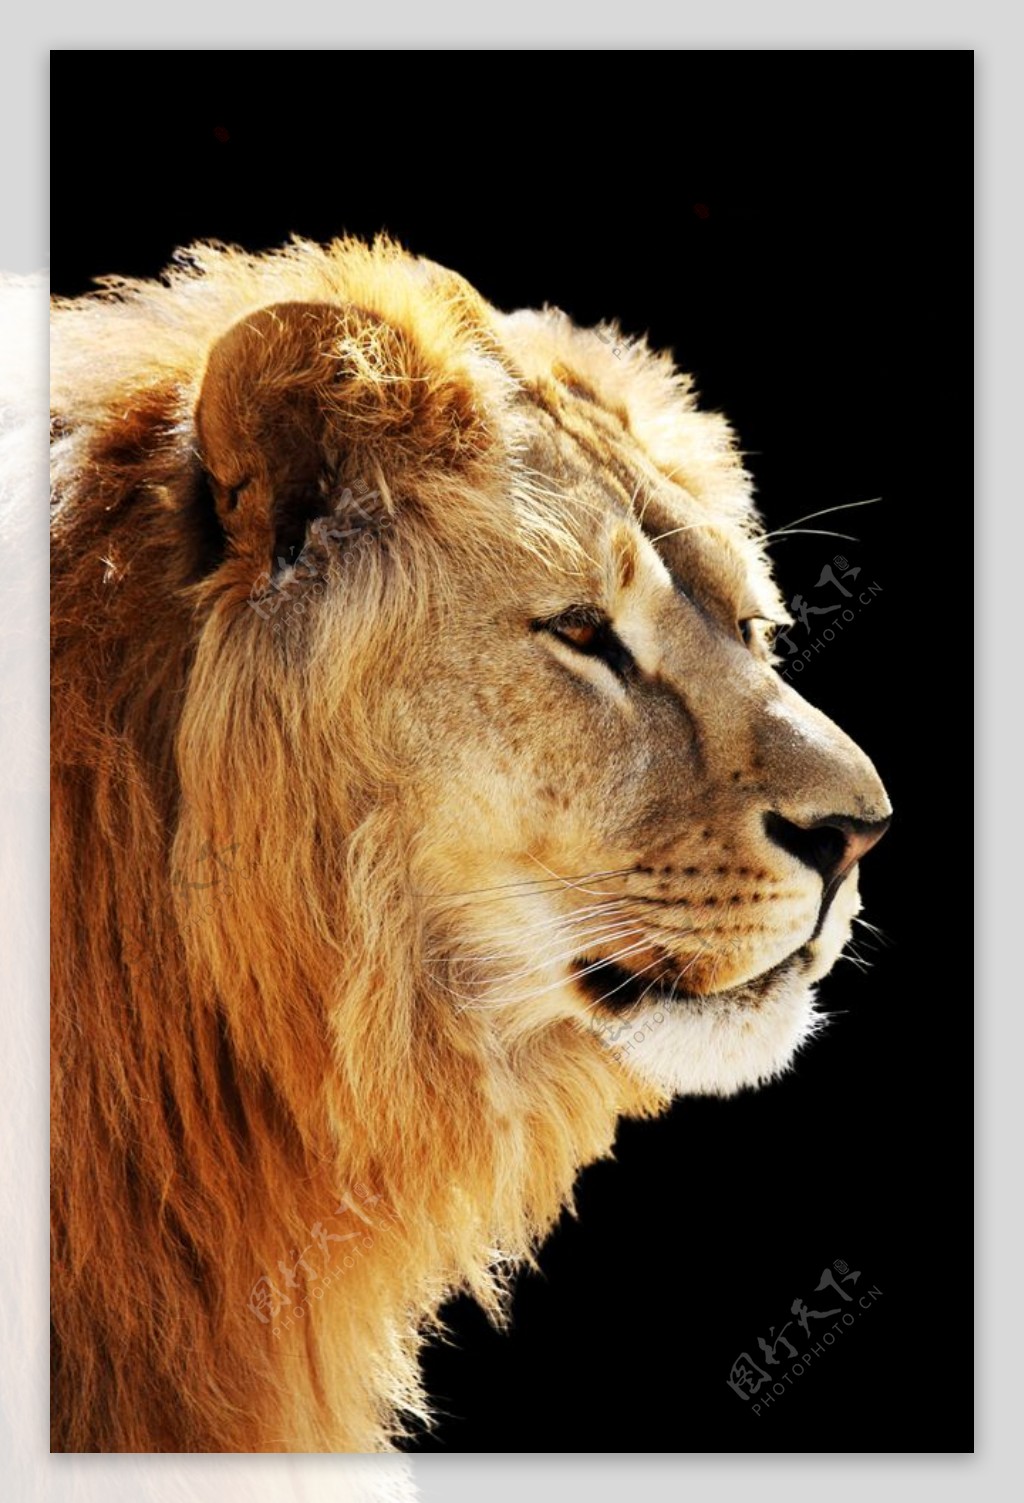 野兽狮子头像图片